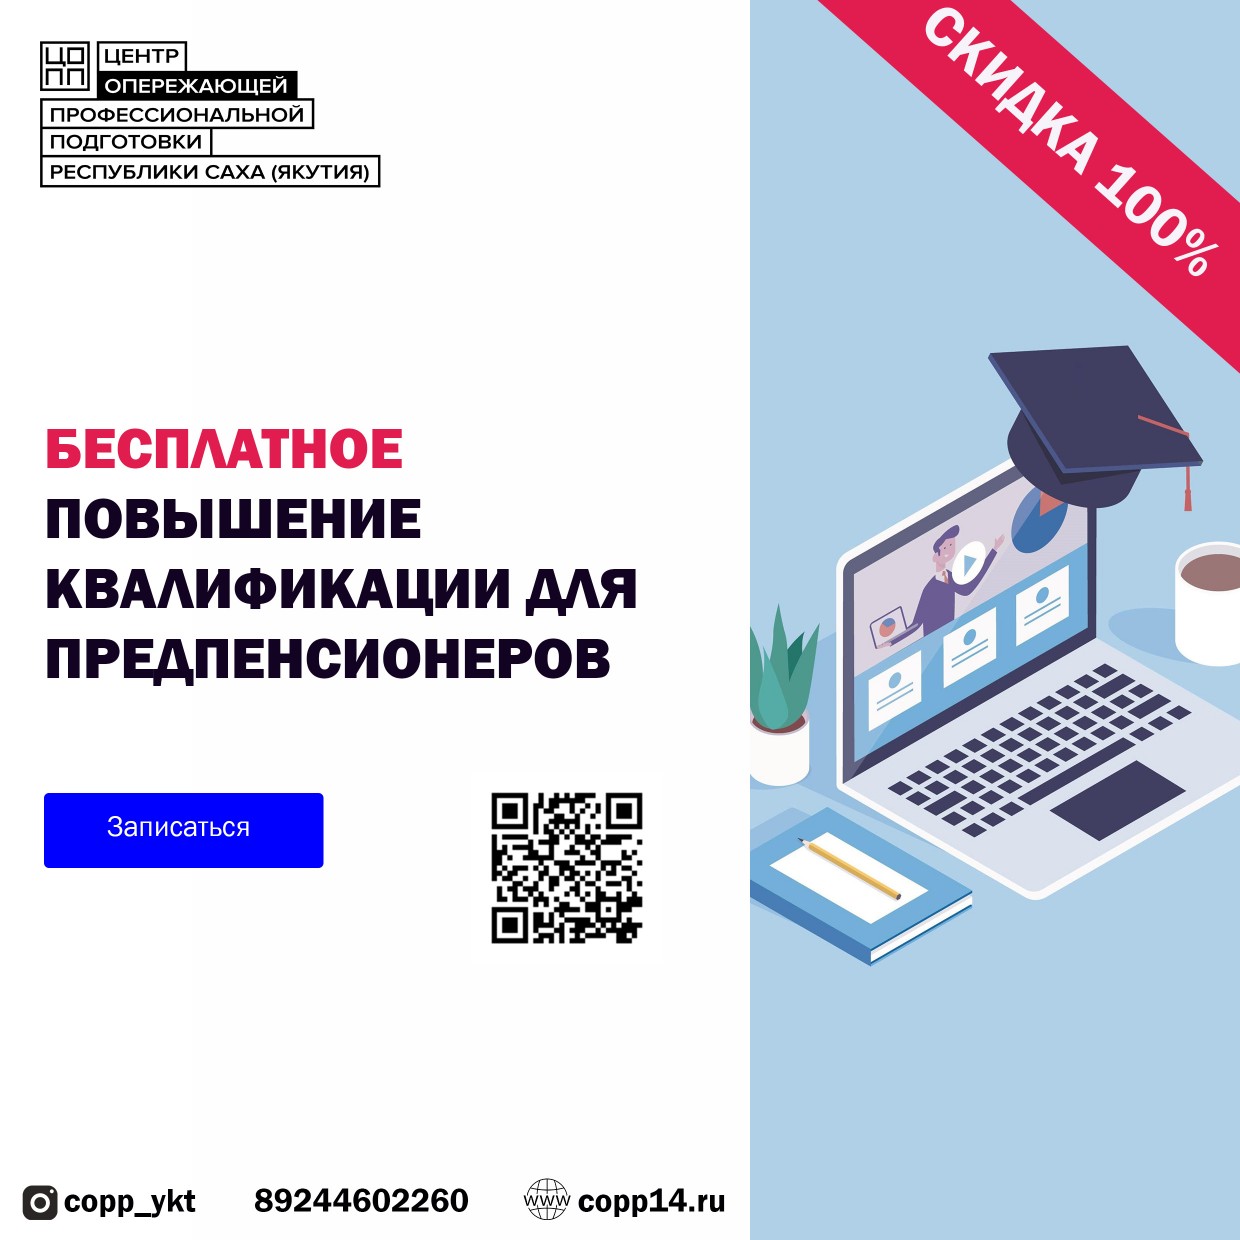 ЦОПП Якутии приглашает предпенсионеров на бесплатные курсы